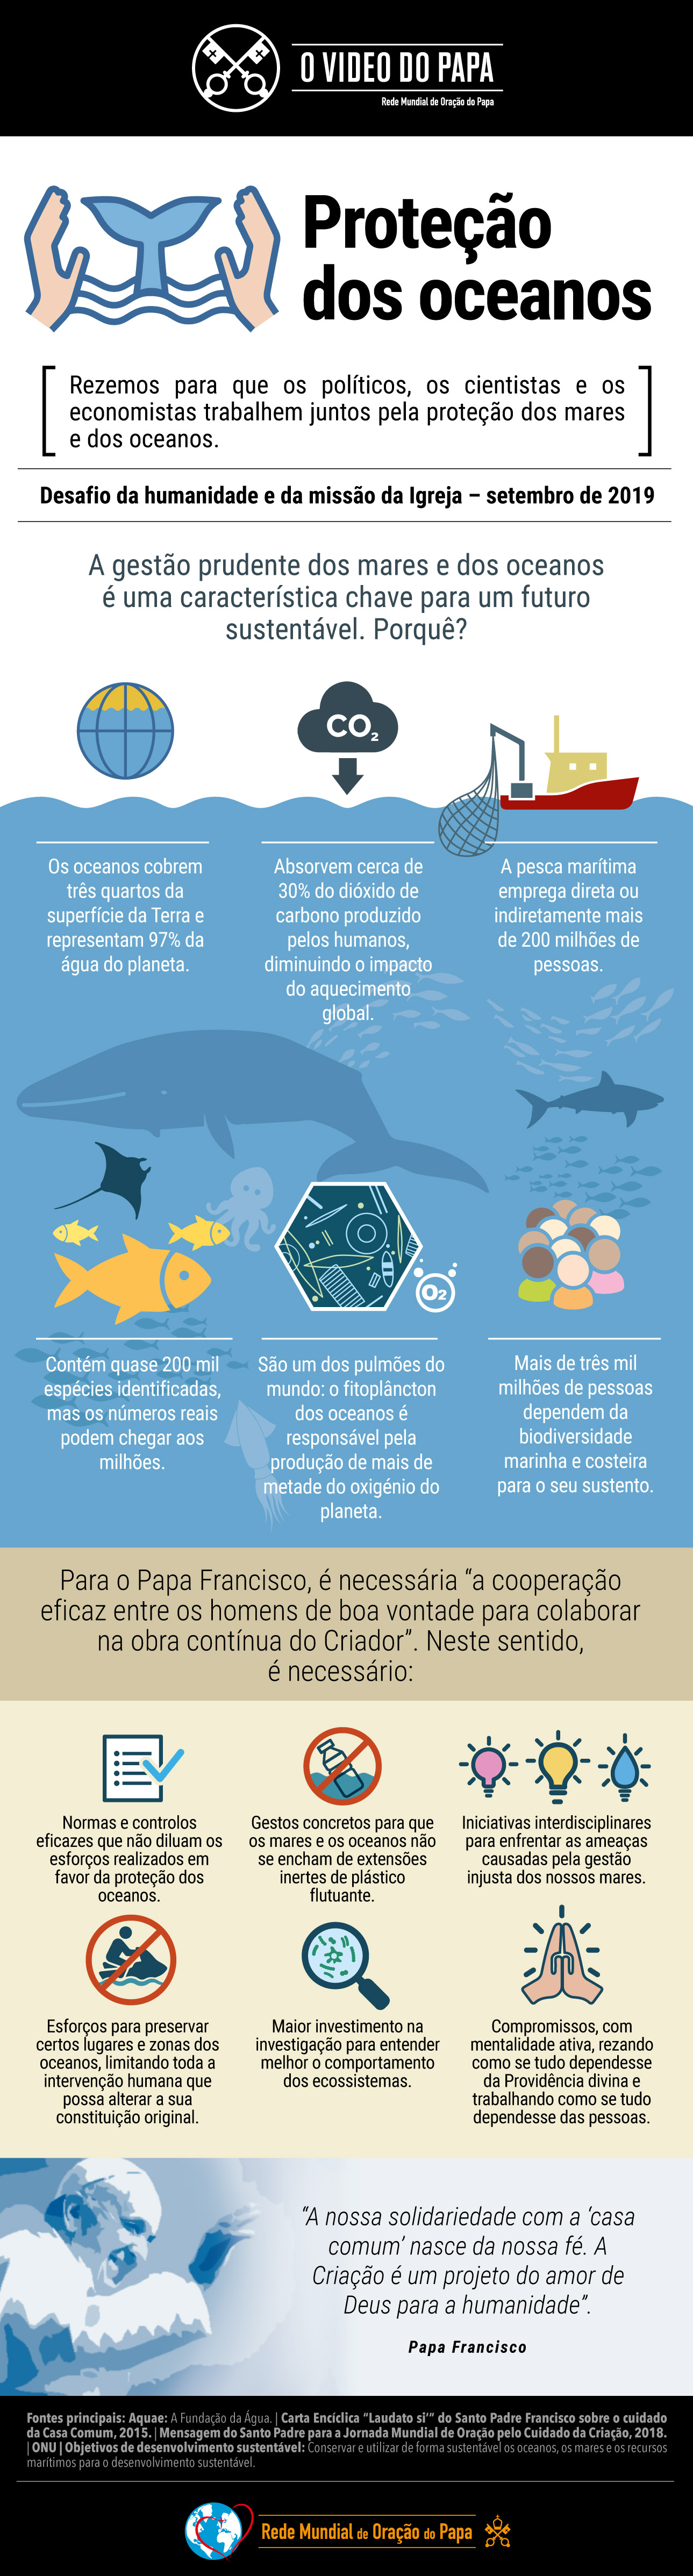 infografia-tpv-9-2019-4-pt-protecao-dos-oceanos.jpg